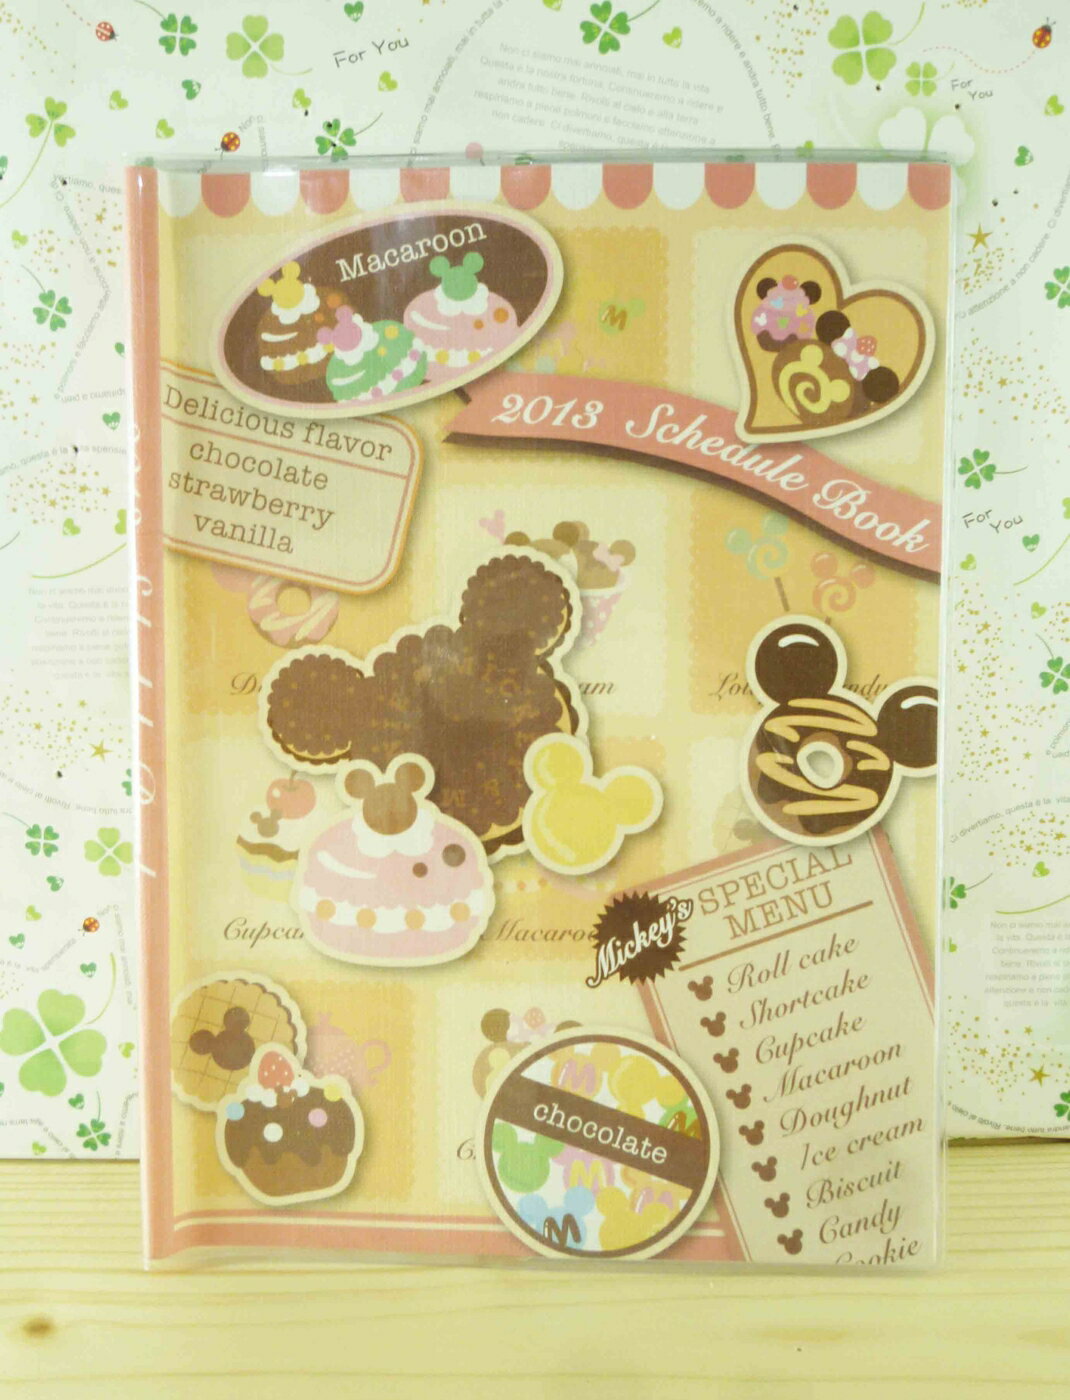 【震撼精品百貨】Micky Mouse 米奇/米妮 證件套-點心 震撼日式精品百貨